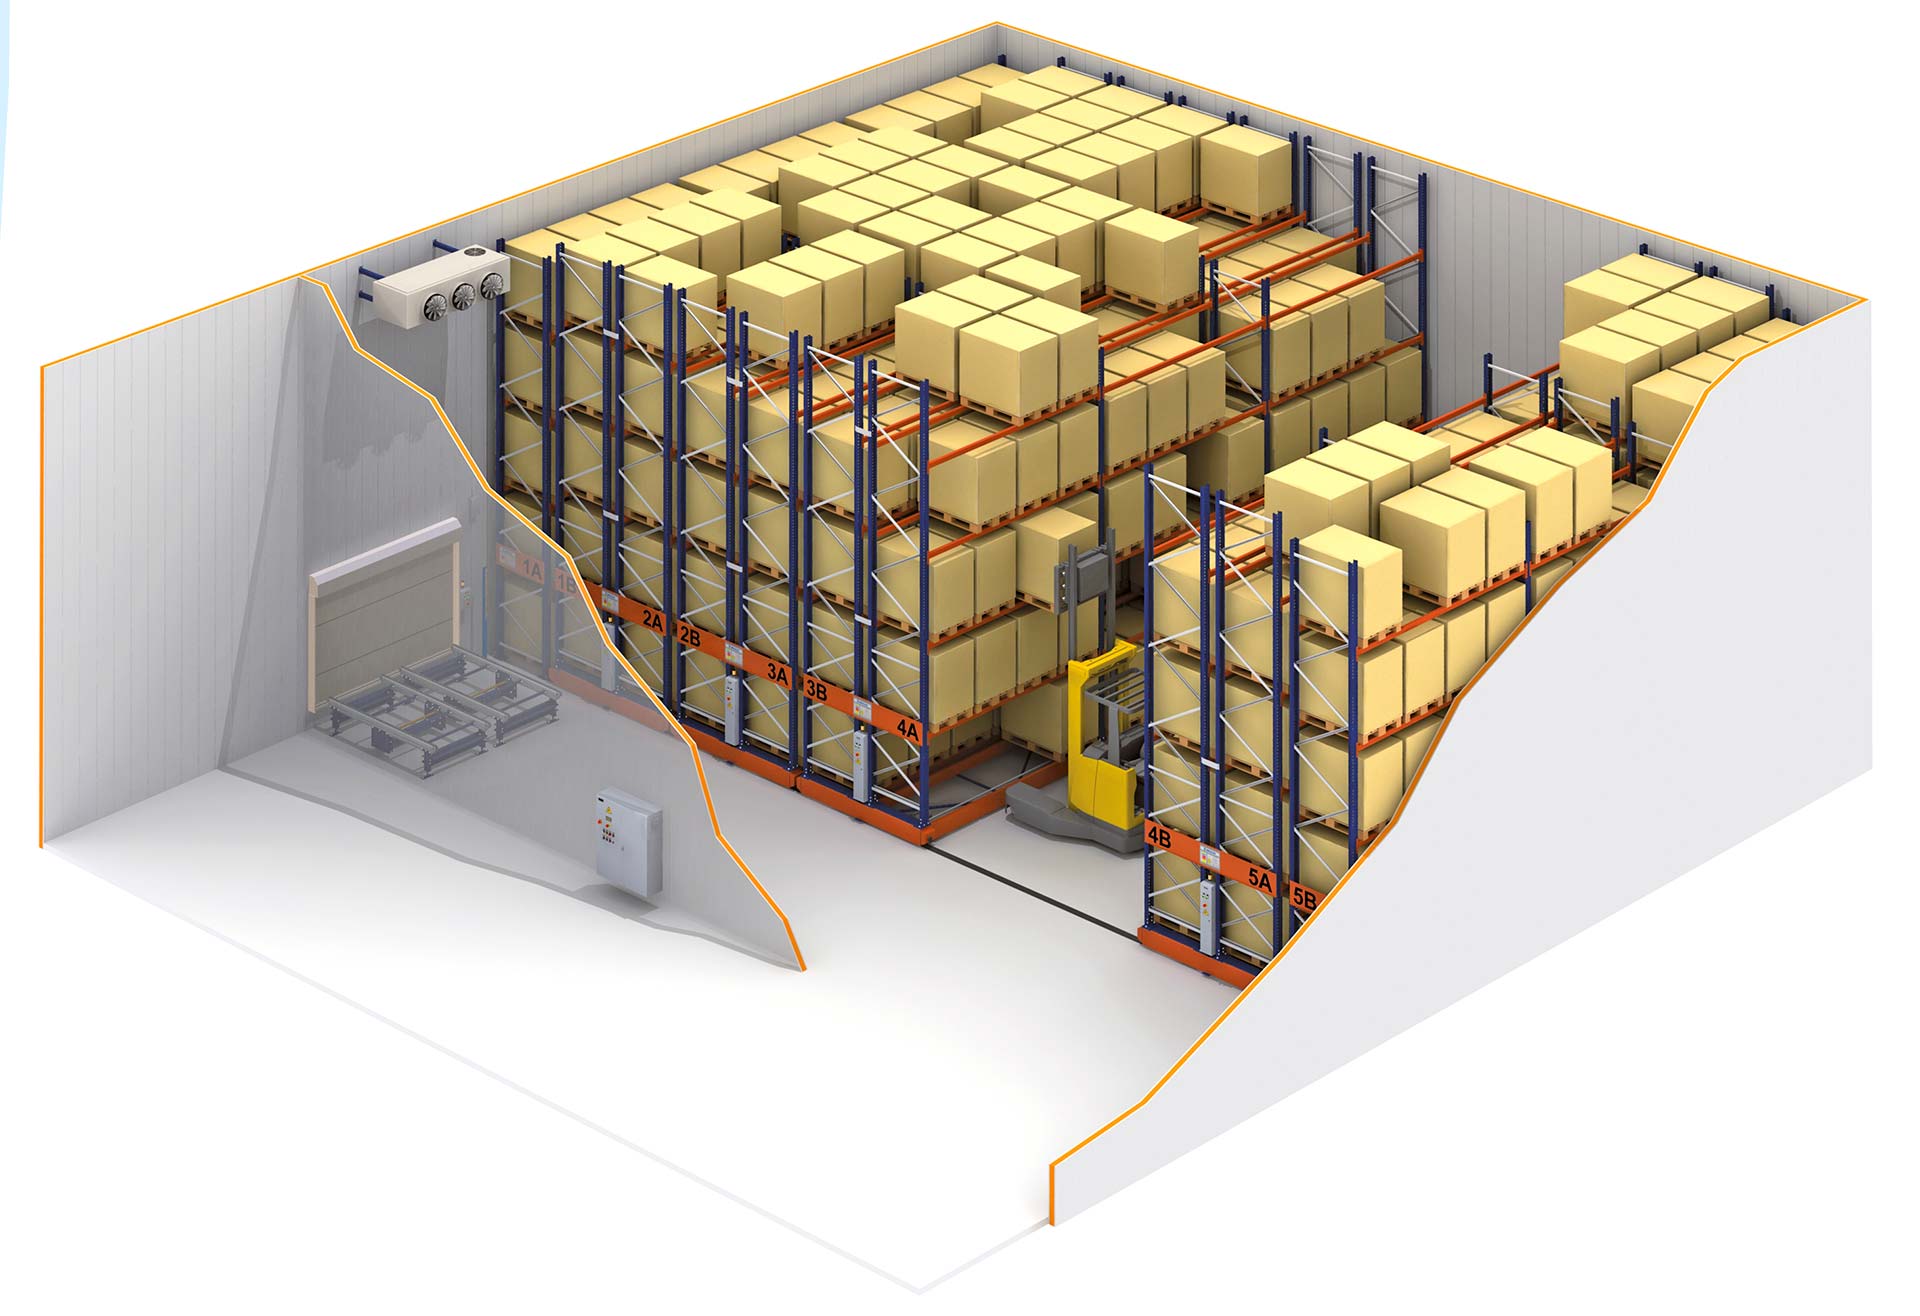 Les rayonnages sur bases mobiles garantissent l'optimisation de la capacité de stockage des entrepôts réfrigérés